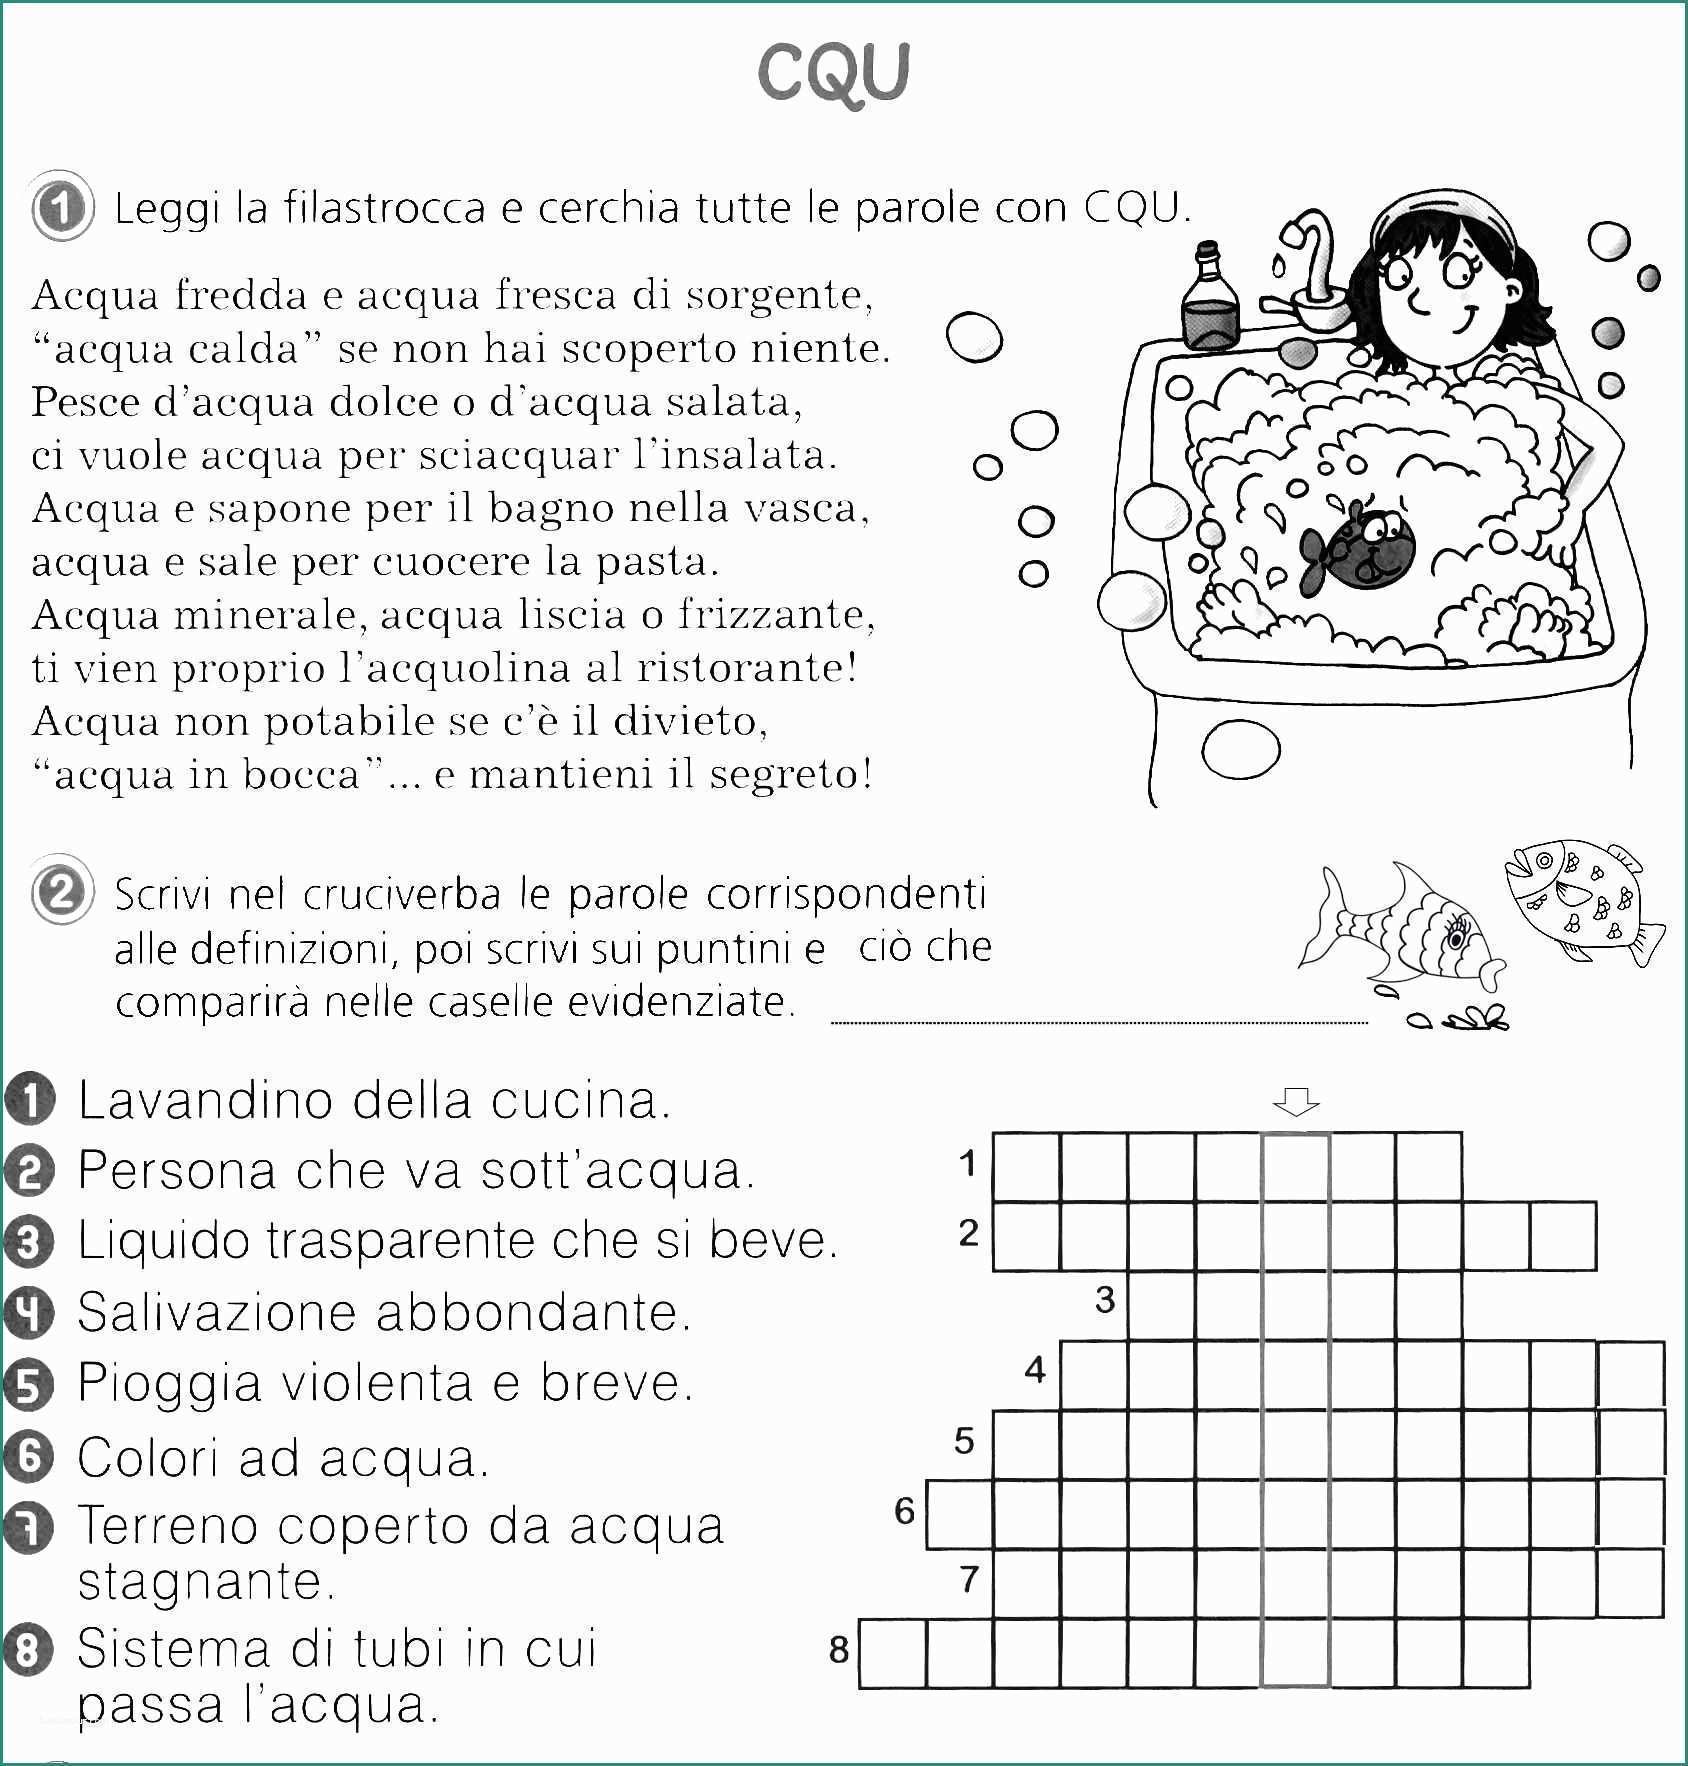 Cu Qu Cqu E Pin by Guendalina Carrozziere On ortografia Seconda